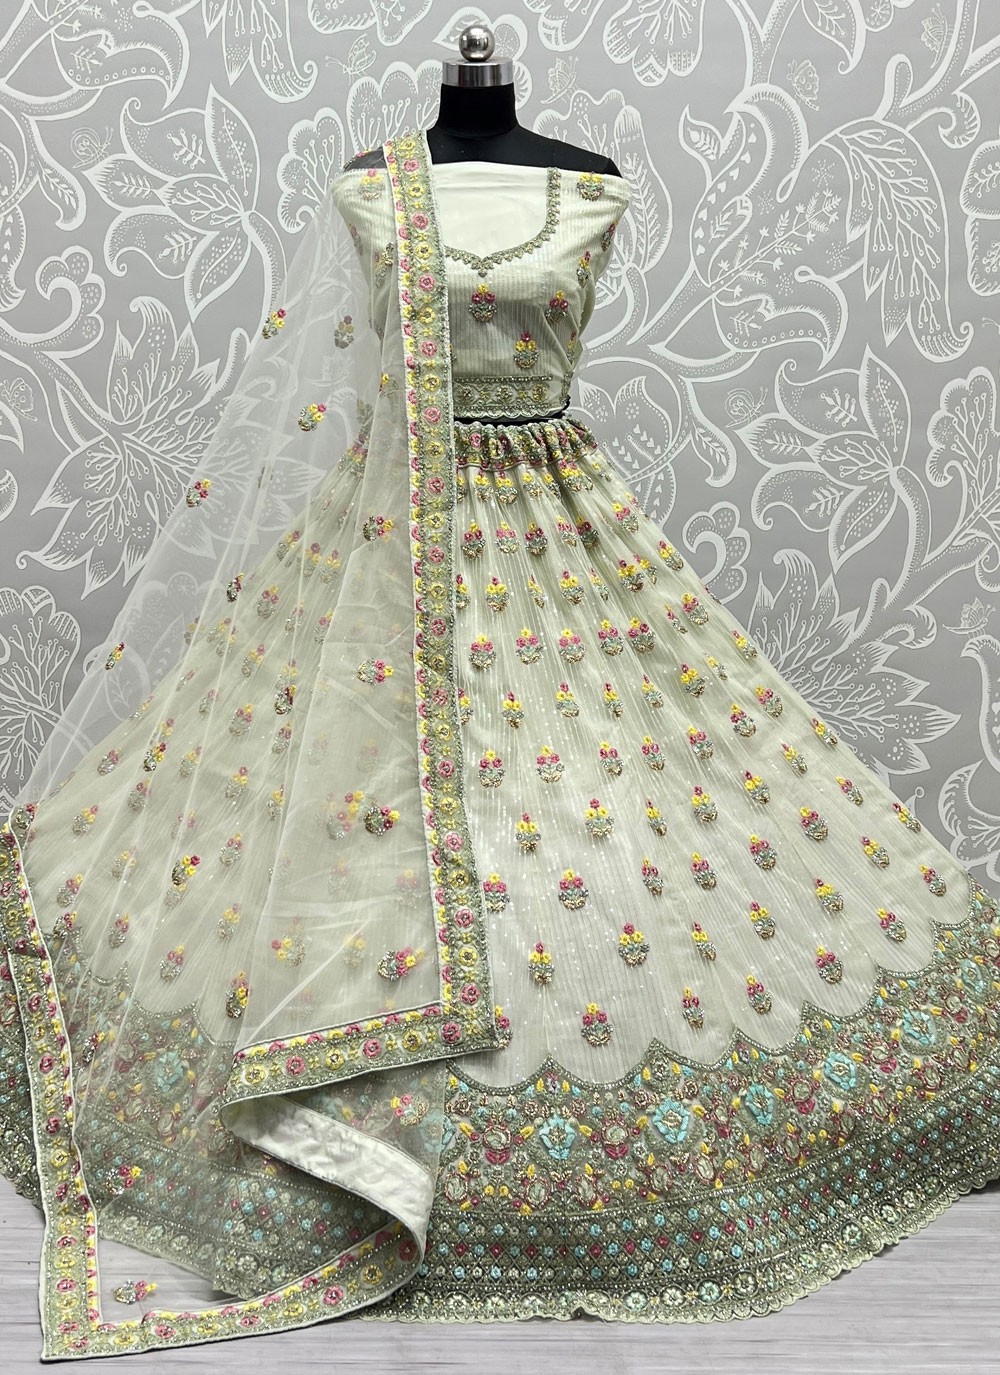 Yuvika Chaudharys Bridal Lehenga Is A Zardosi Embellished In Rose Gold  Dyed Crystals Pic Inside